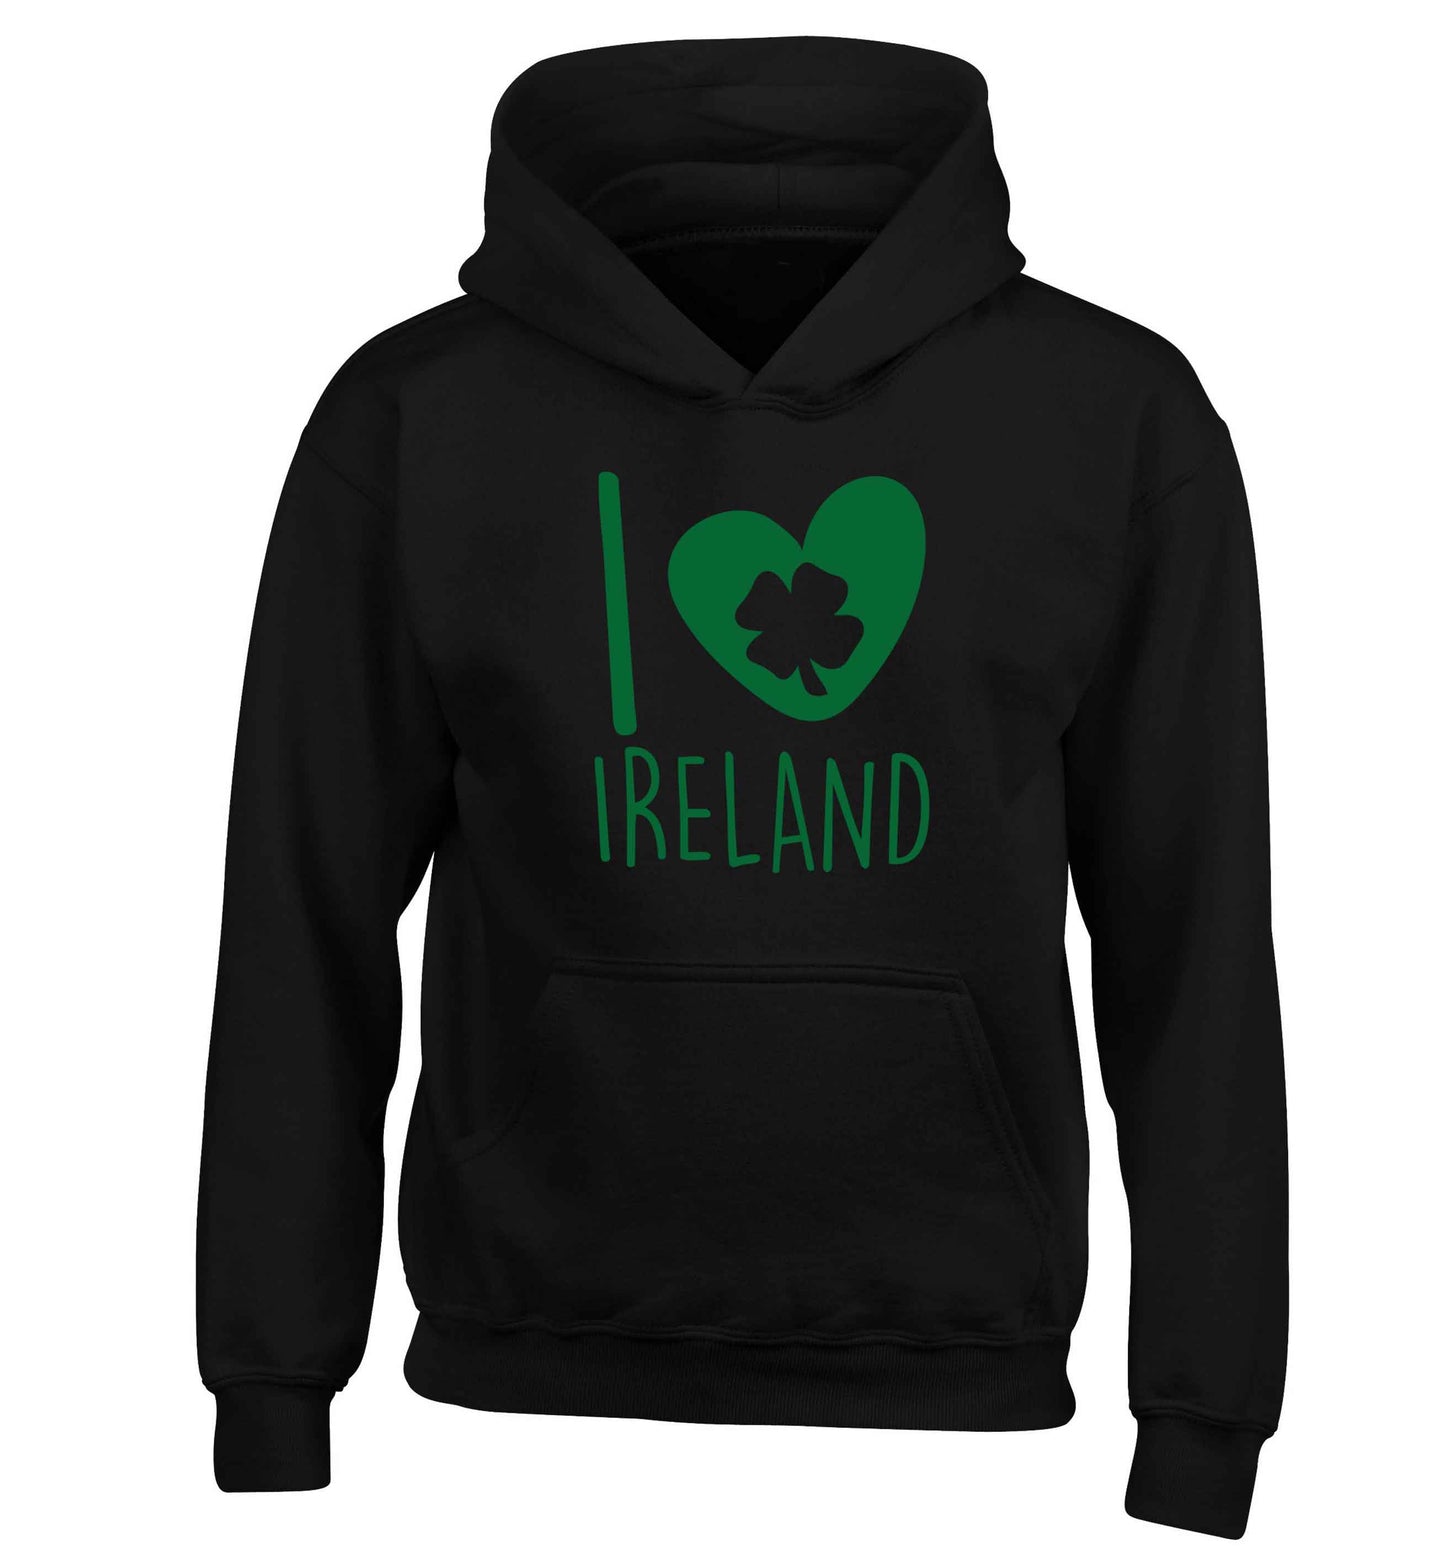 I love Ireland children's black hoodie 12-13 Years